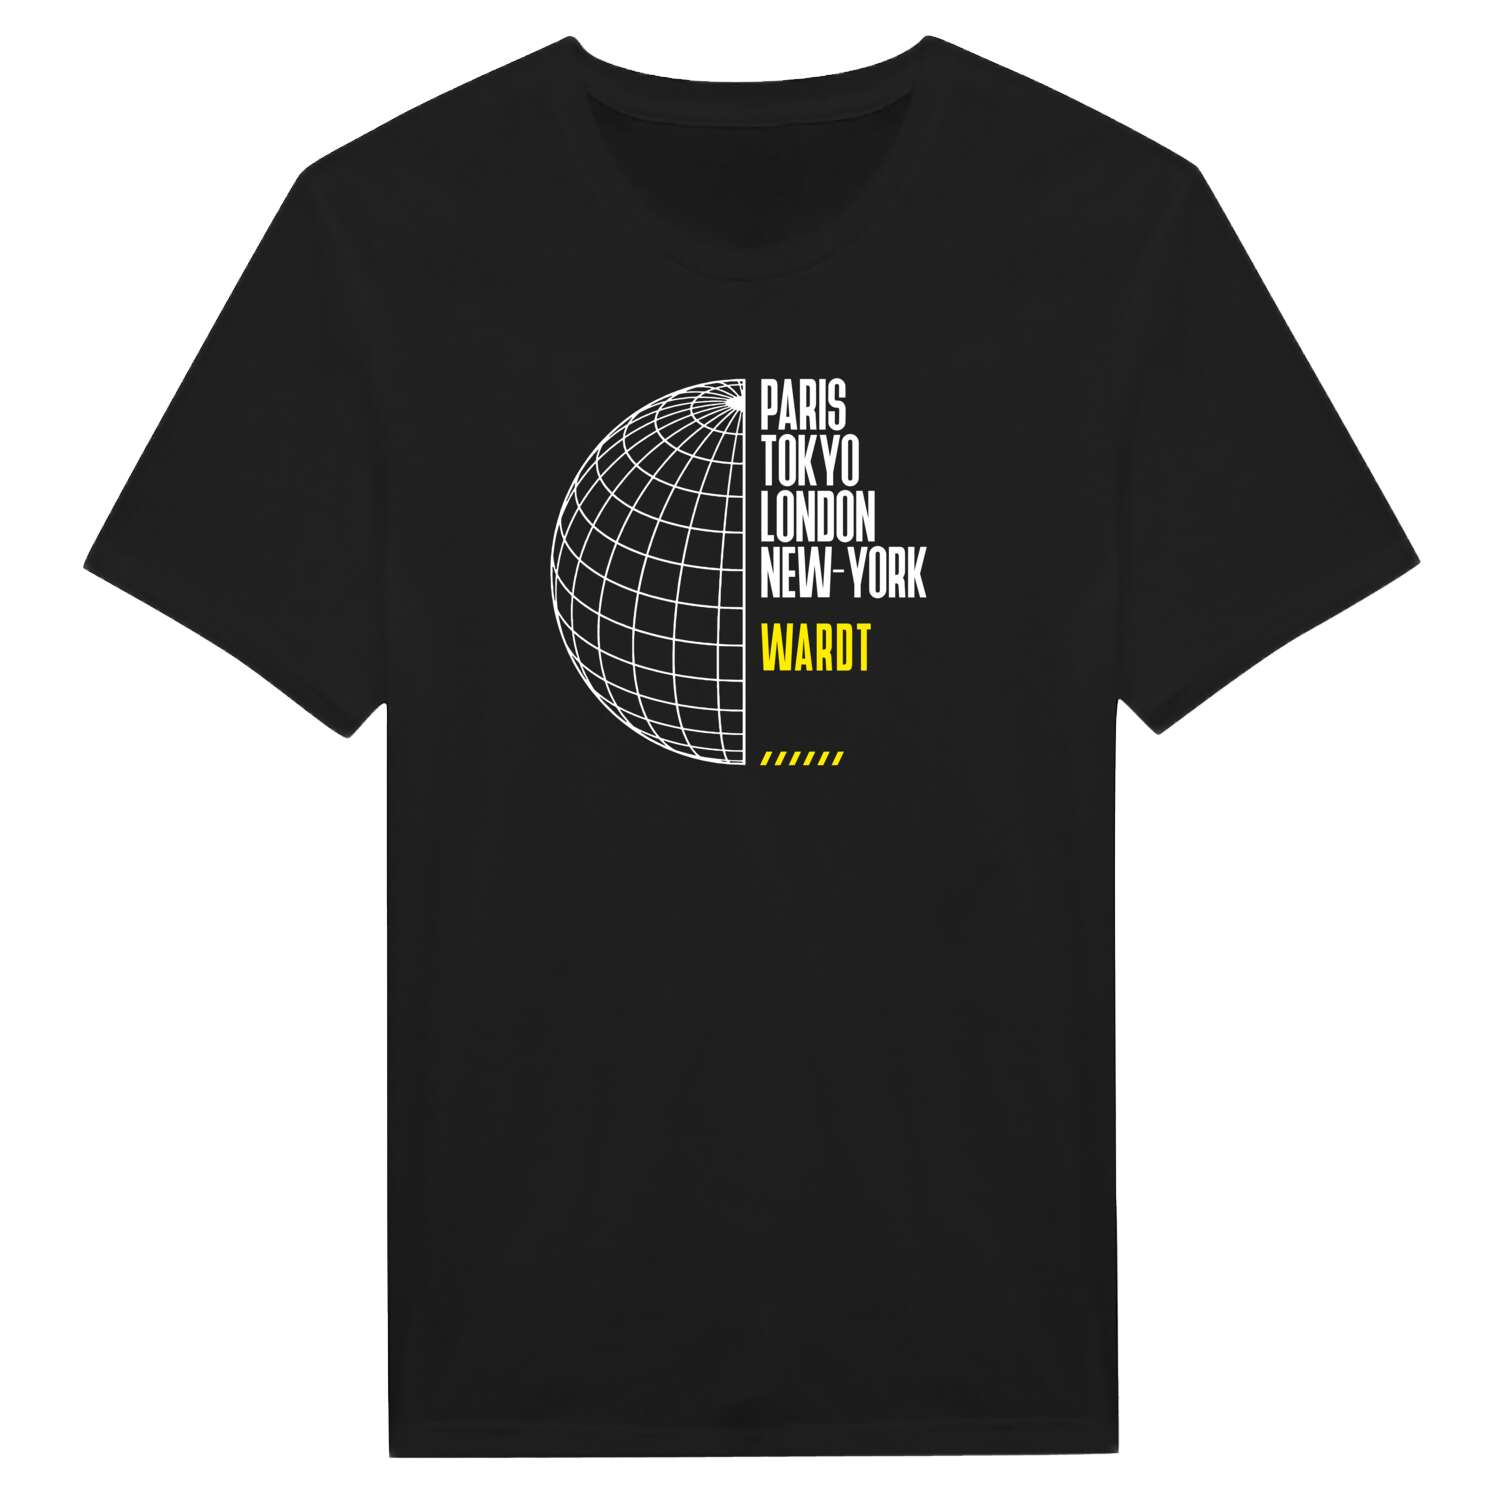 Wardt T-Shirt »Paris Tokyo London«